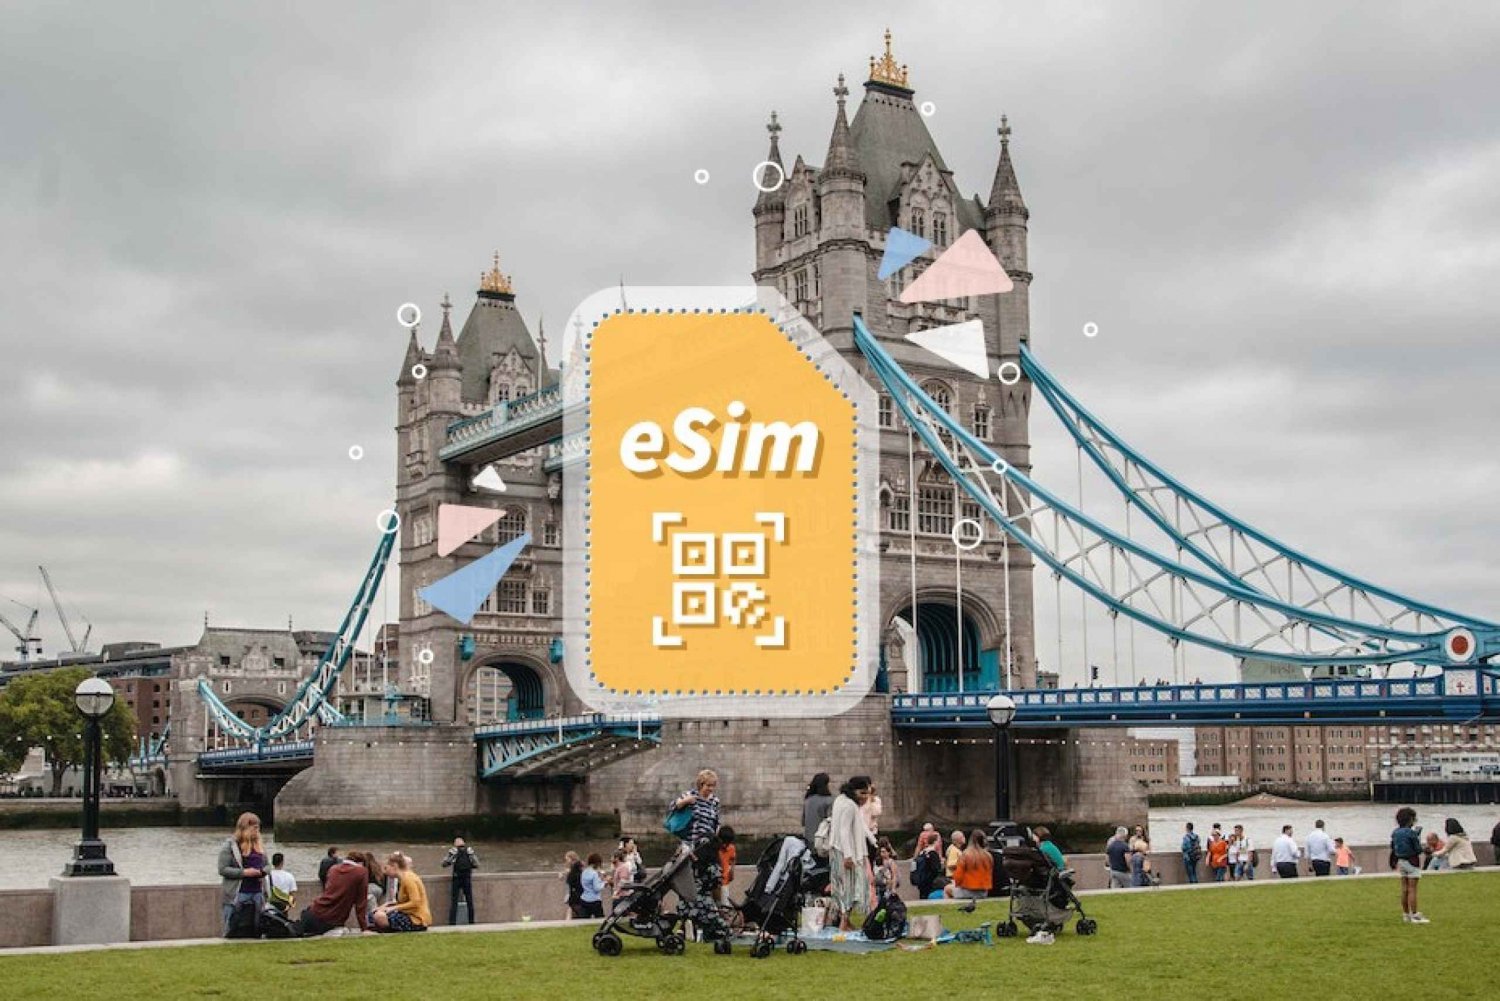 UK/Europa: 5G eSim Mobile Datenplan